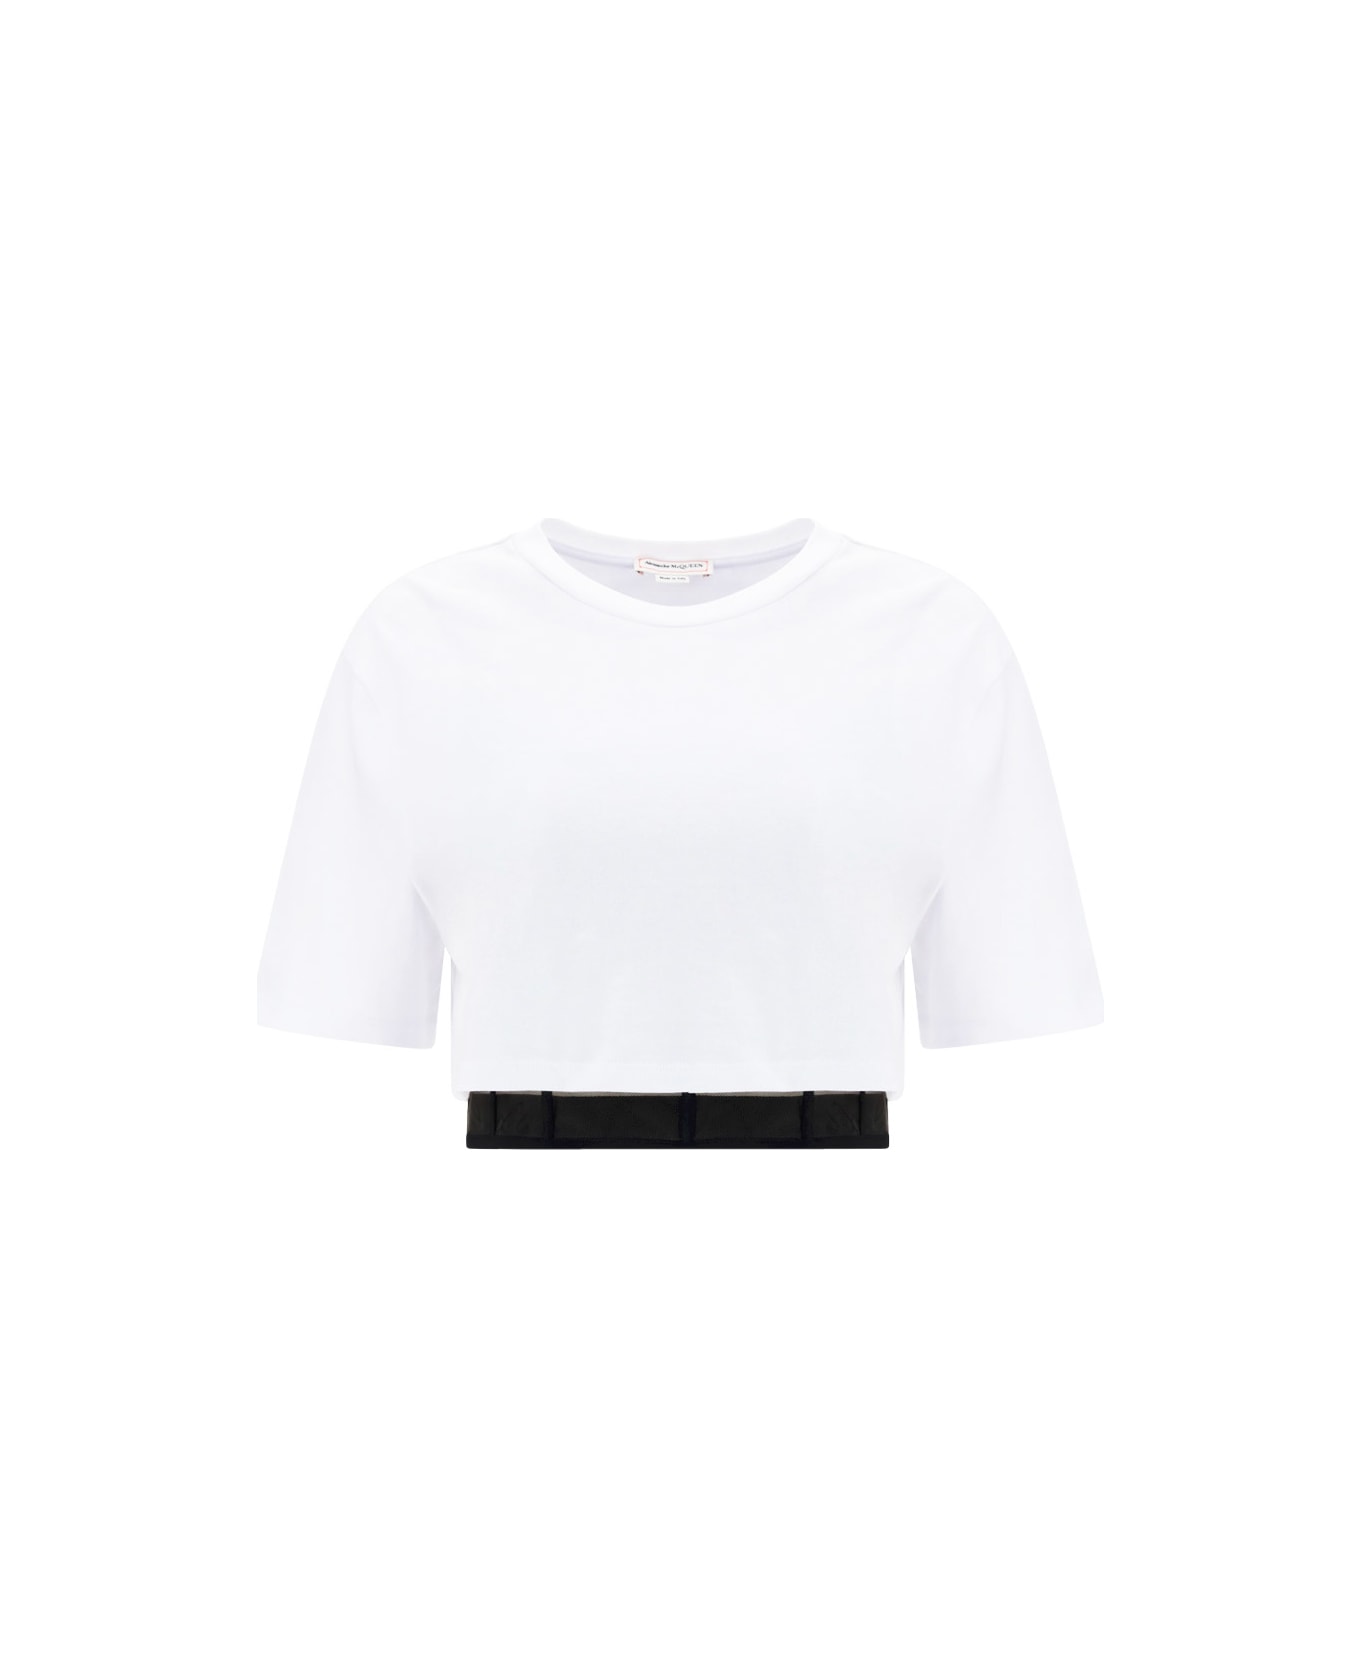 Alexander McQueen Bustier Hybr T-shirt - Optical White